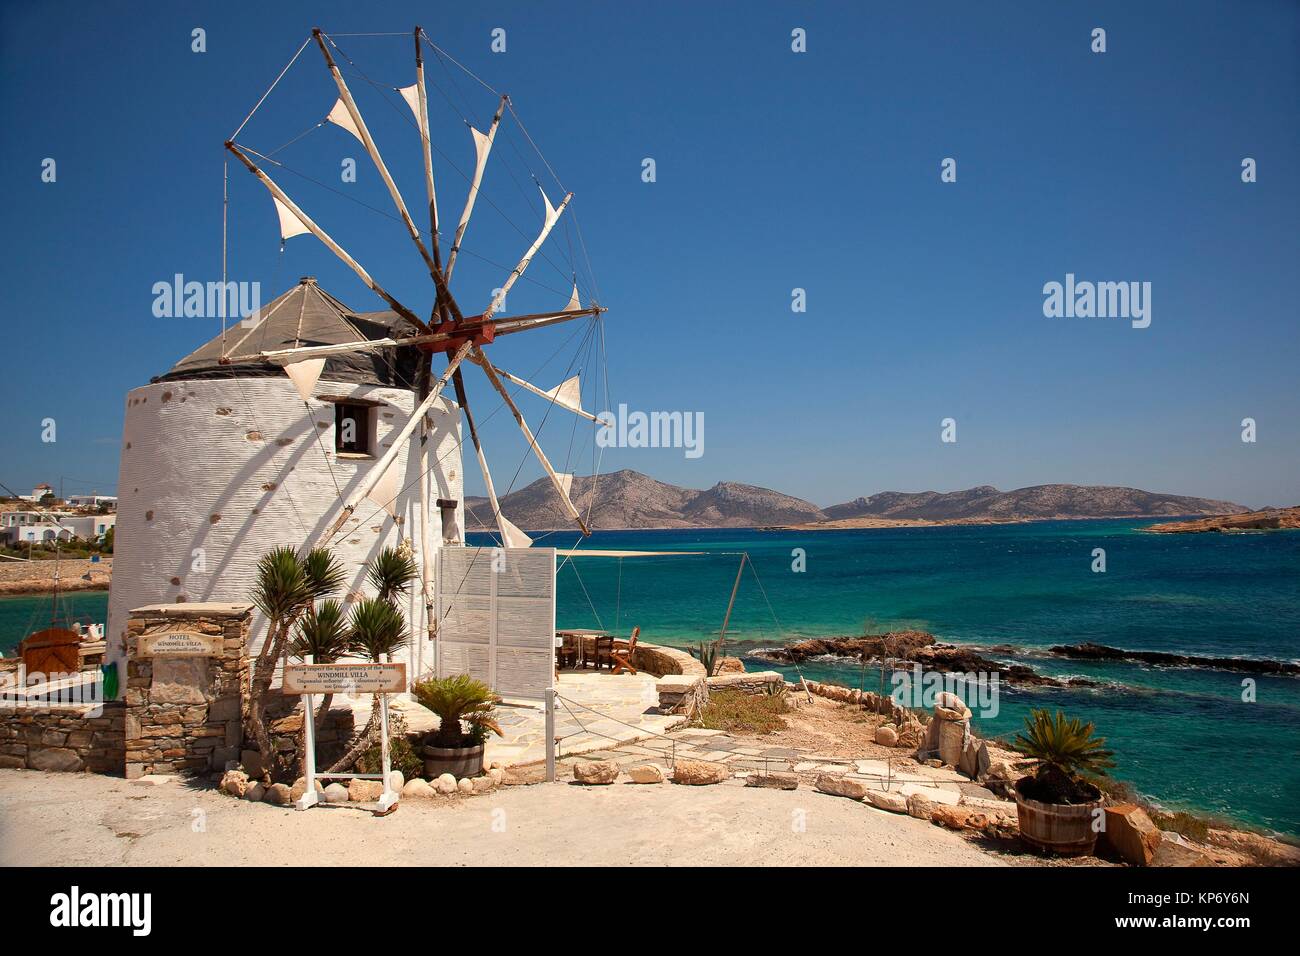 Koufonissi greece immagini e fotografie stock ad alta risoluzione - Alamy